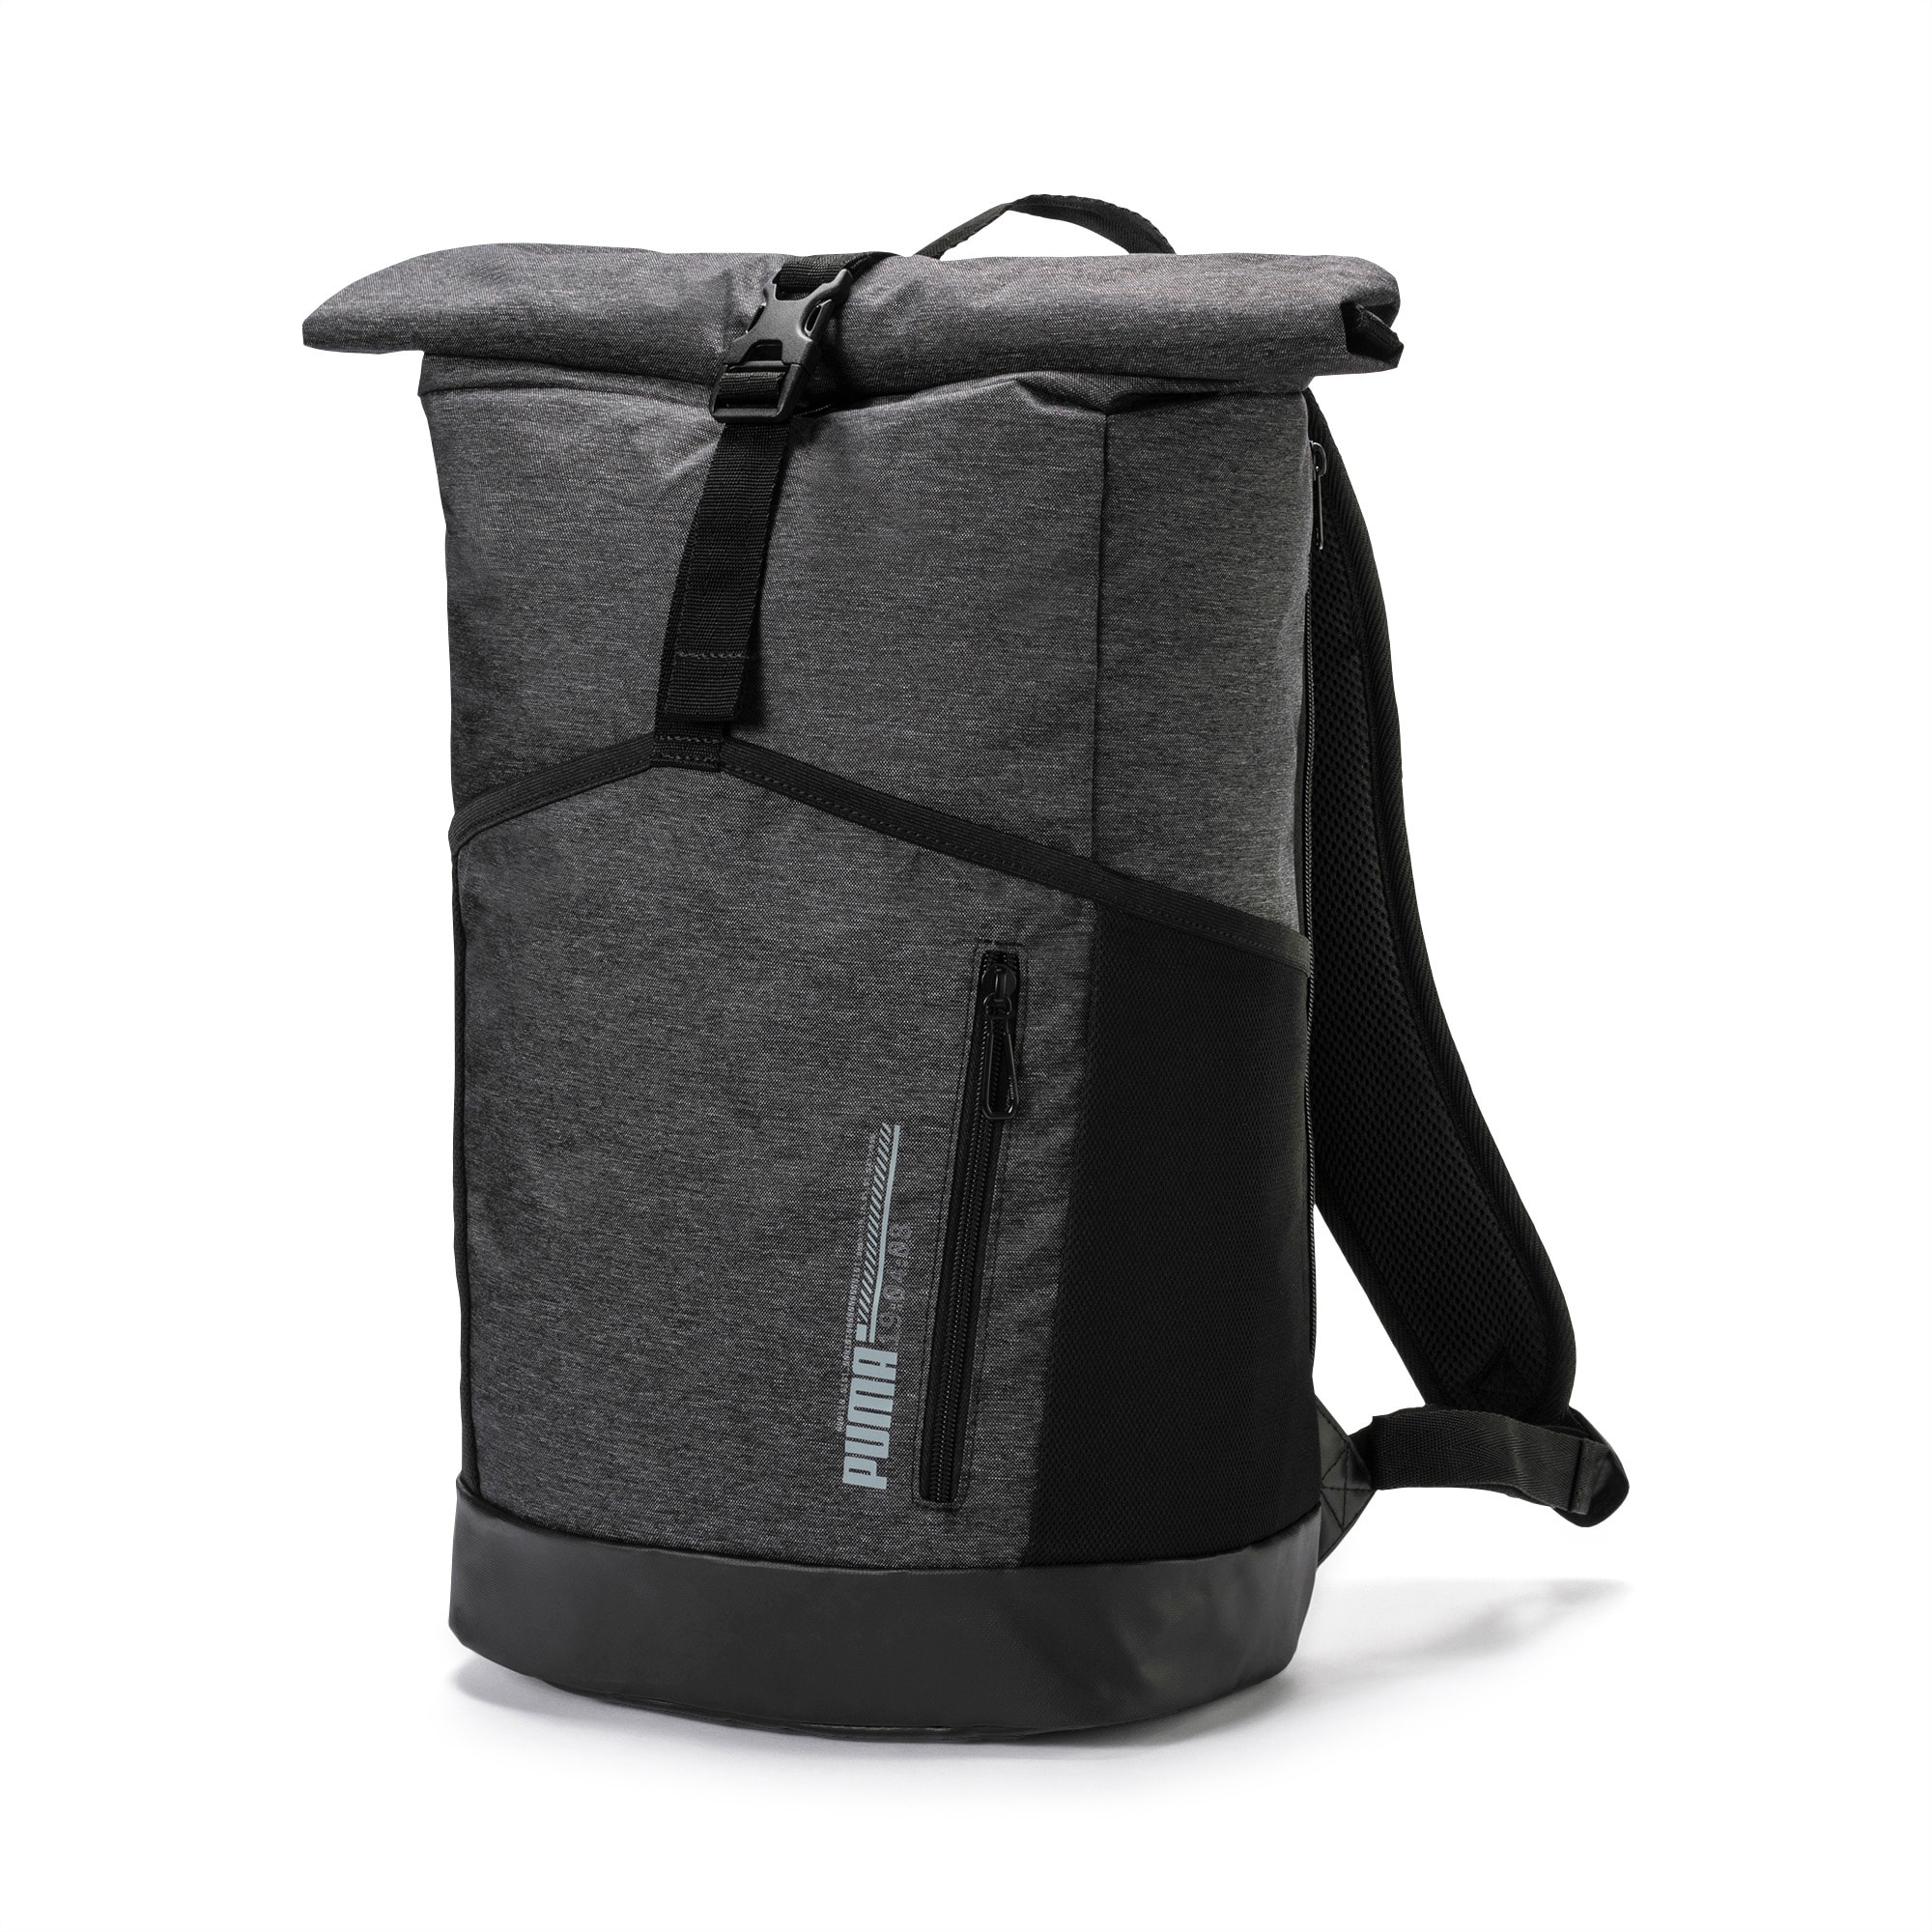 rolltop backpacks - Puma Energy Rolltop Backpacks 